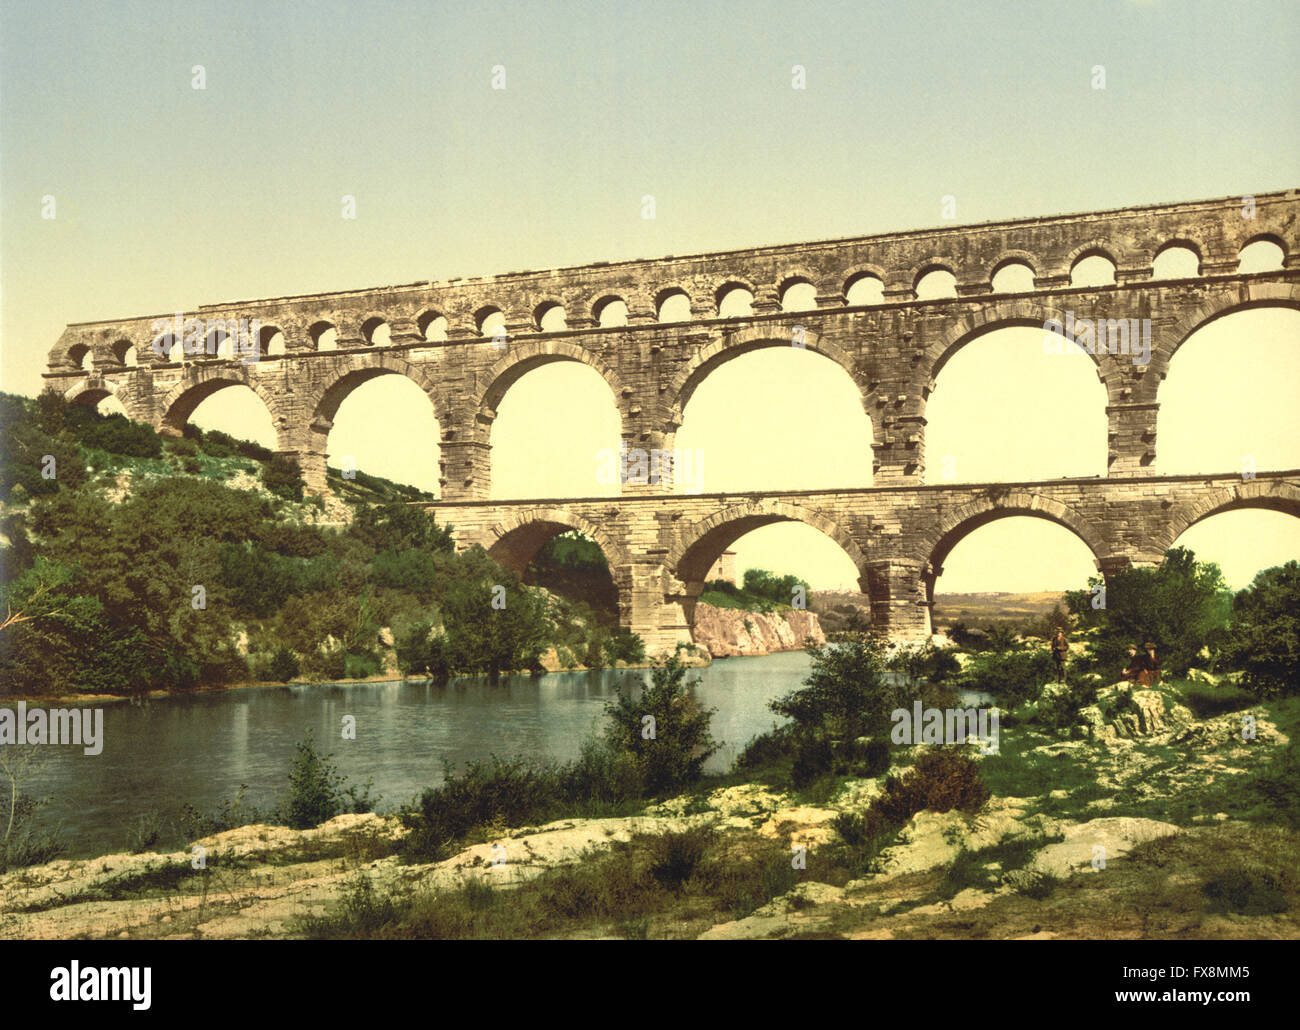 Römische Brücke über den Gard, gebaut von Agrippa, Nîmes, Frankreich, Photochrome Print, um 1900 Stockfoto